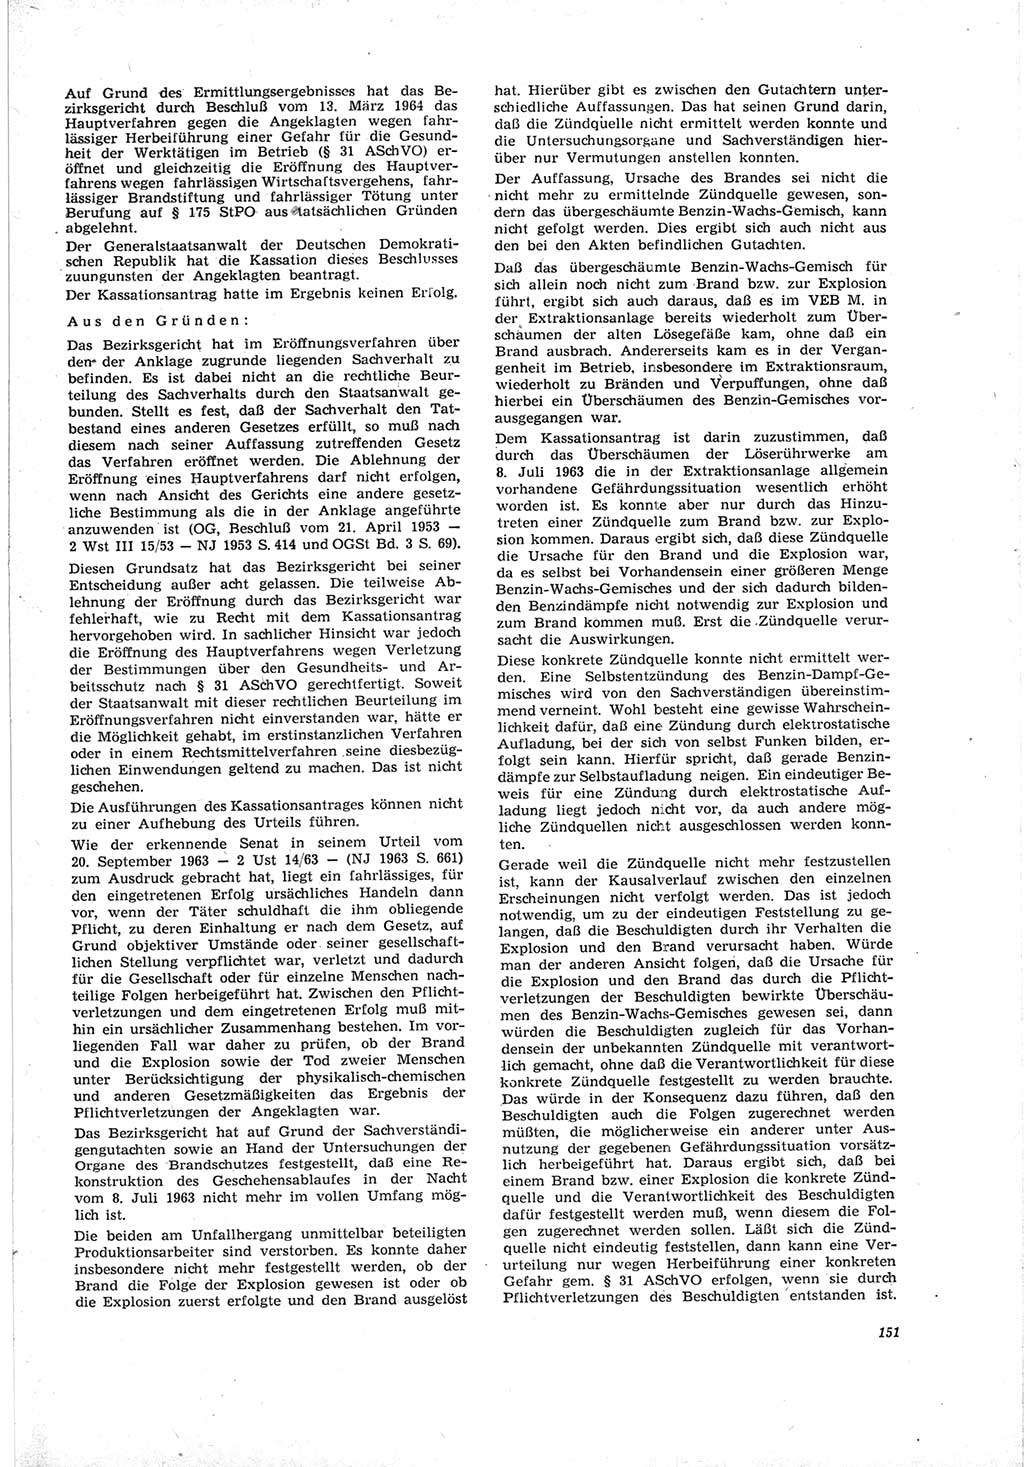 Neue Justiz (NJ), Zeitschrift für Recht und Rechtswissenschaft [Deutsche Demokratische Republik (DDR)], 19. Jahrgang 1965, Seite 151 (NJ DDR 1965, S. 151)